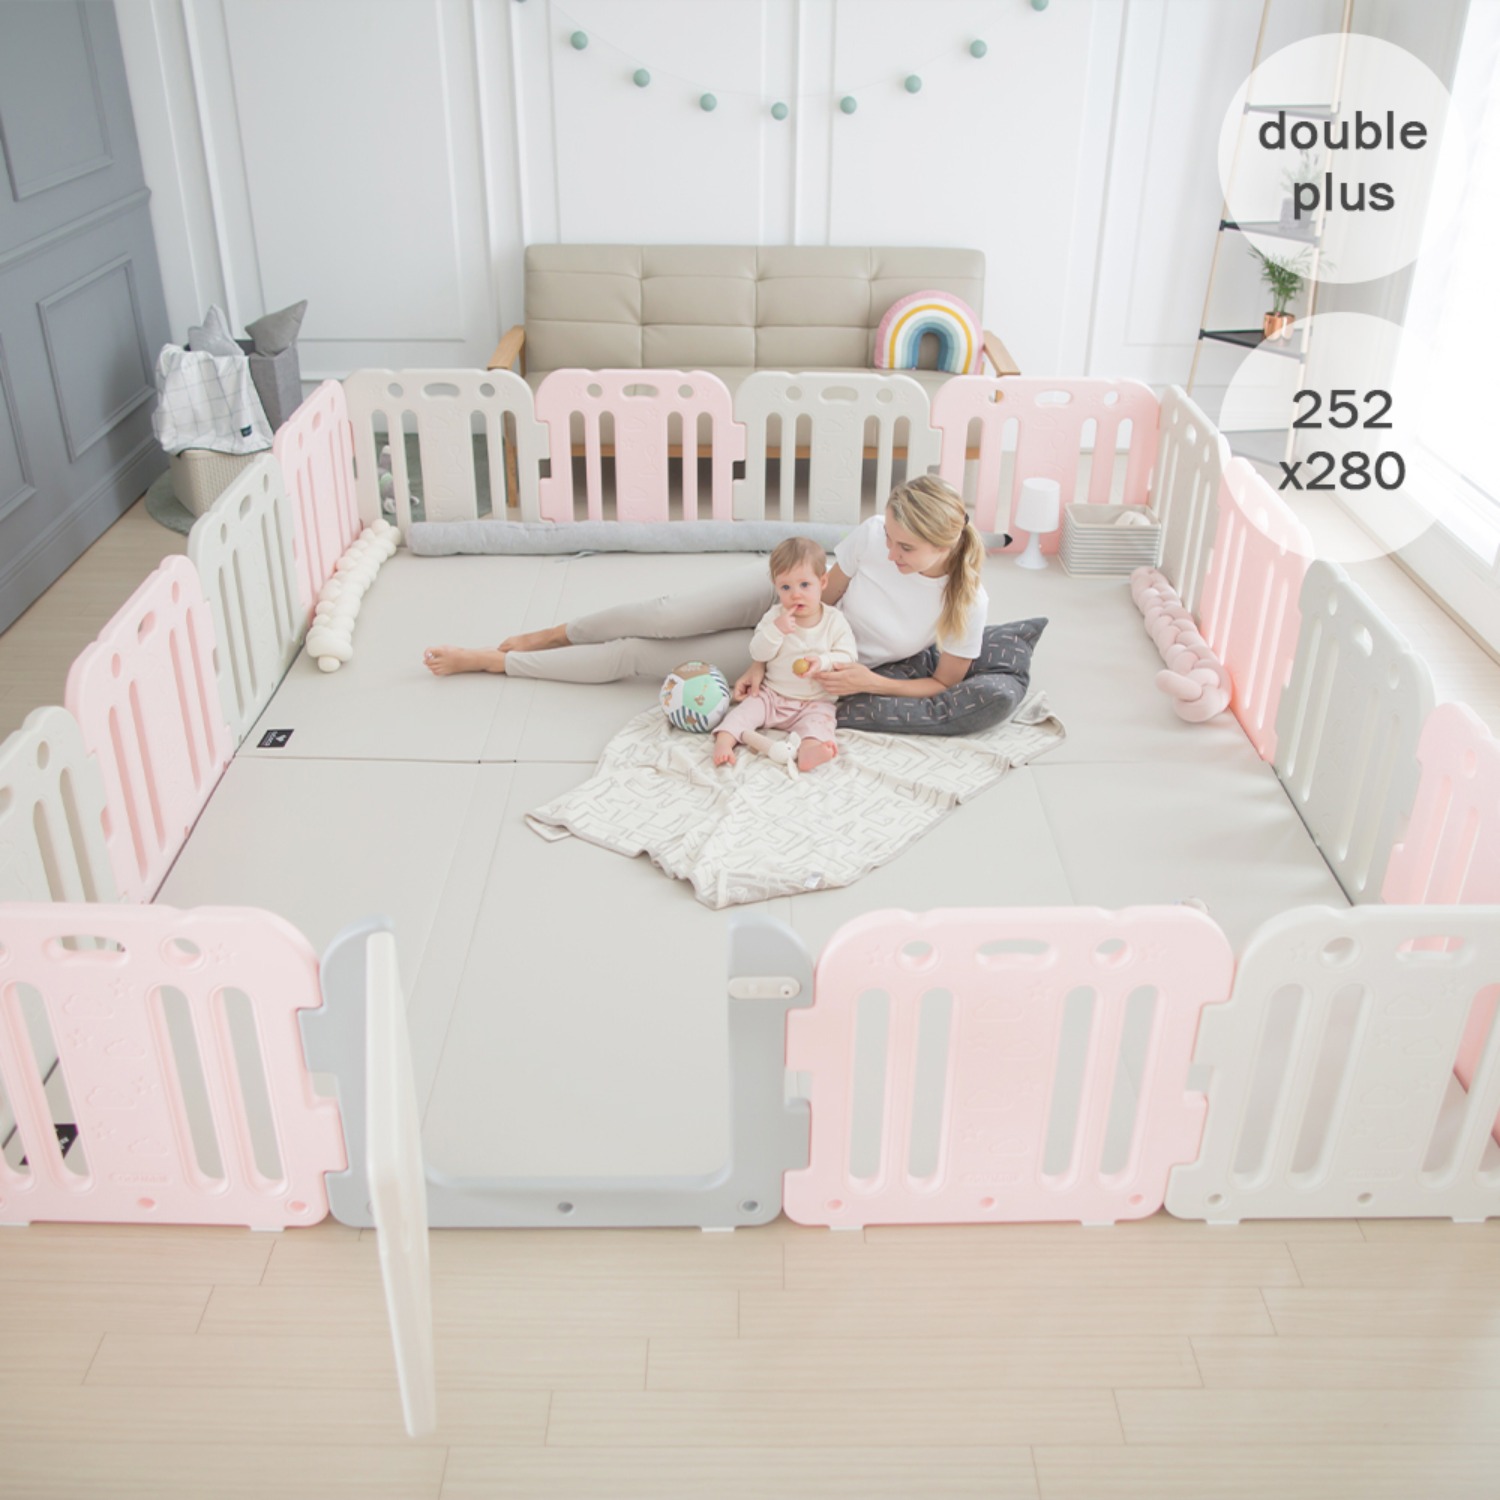 double plus baby room set 252 x 280